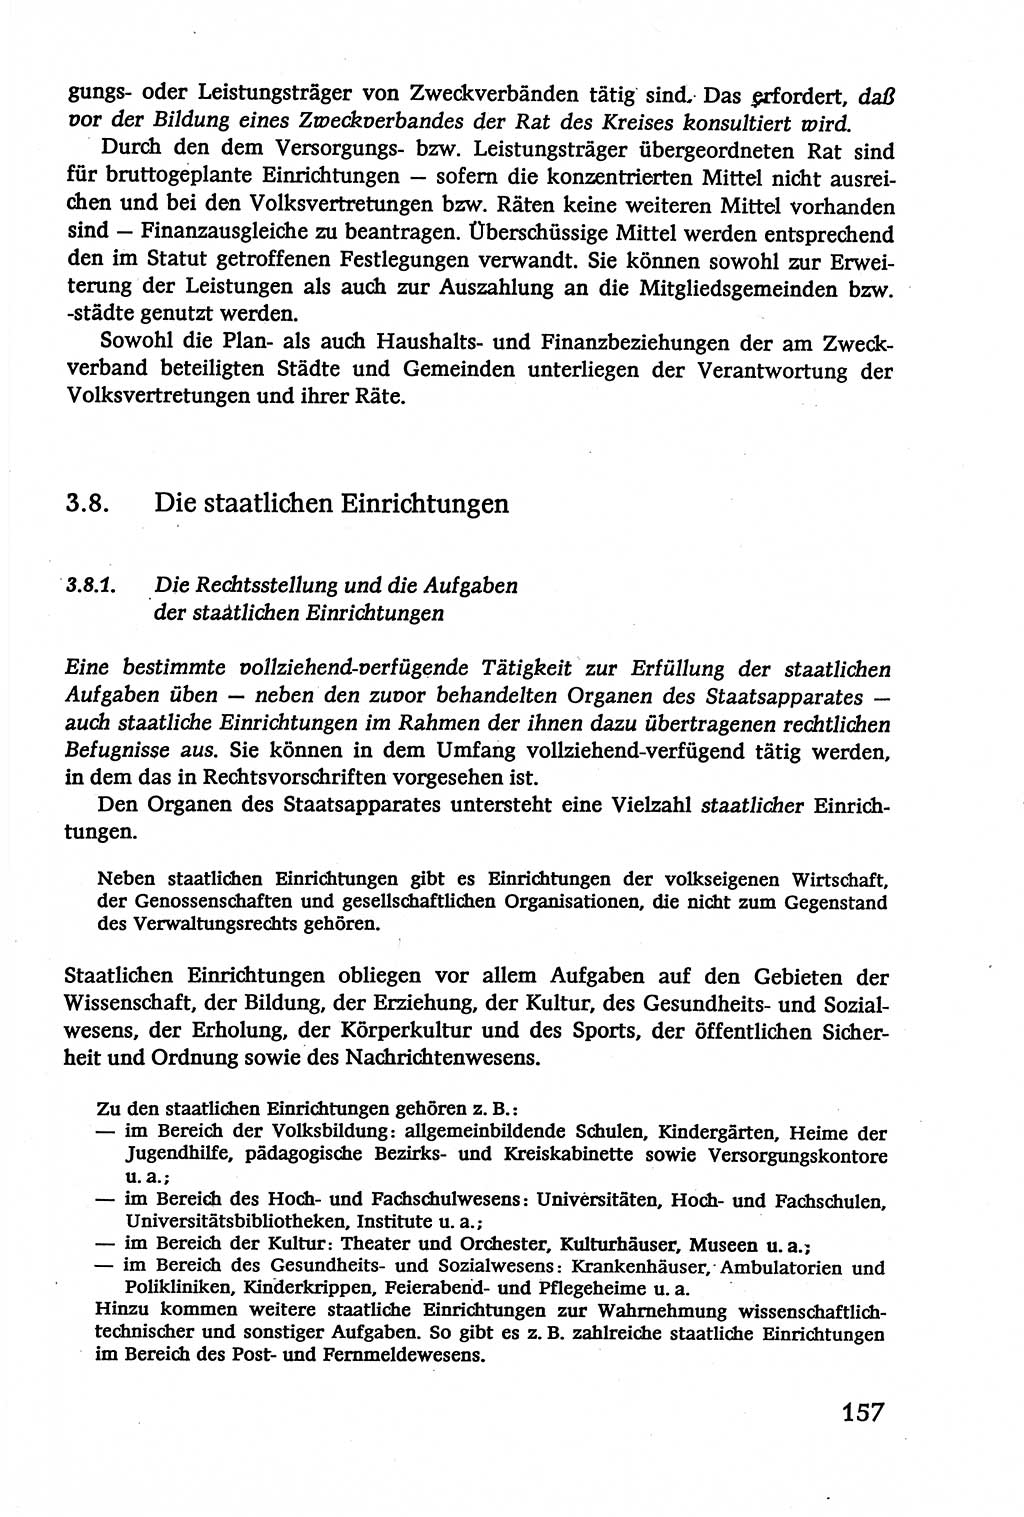 Verwaltungsrecht [Deutsche Demokratische Republik (DDR)], Lehrbuch 1979, Seite 157 (Verw.-R. DDR Lb. 1979, S. 157)